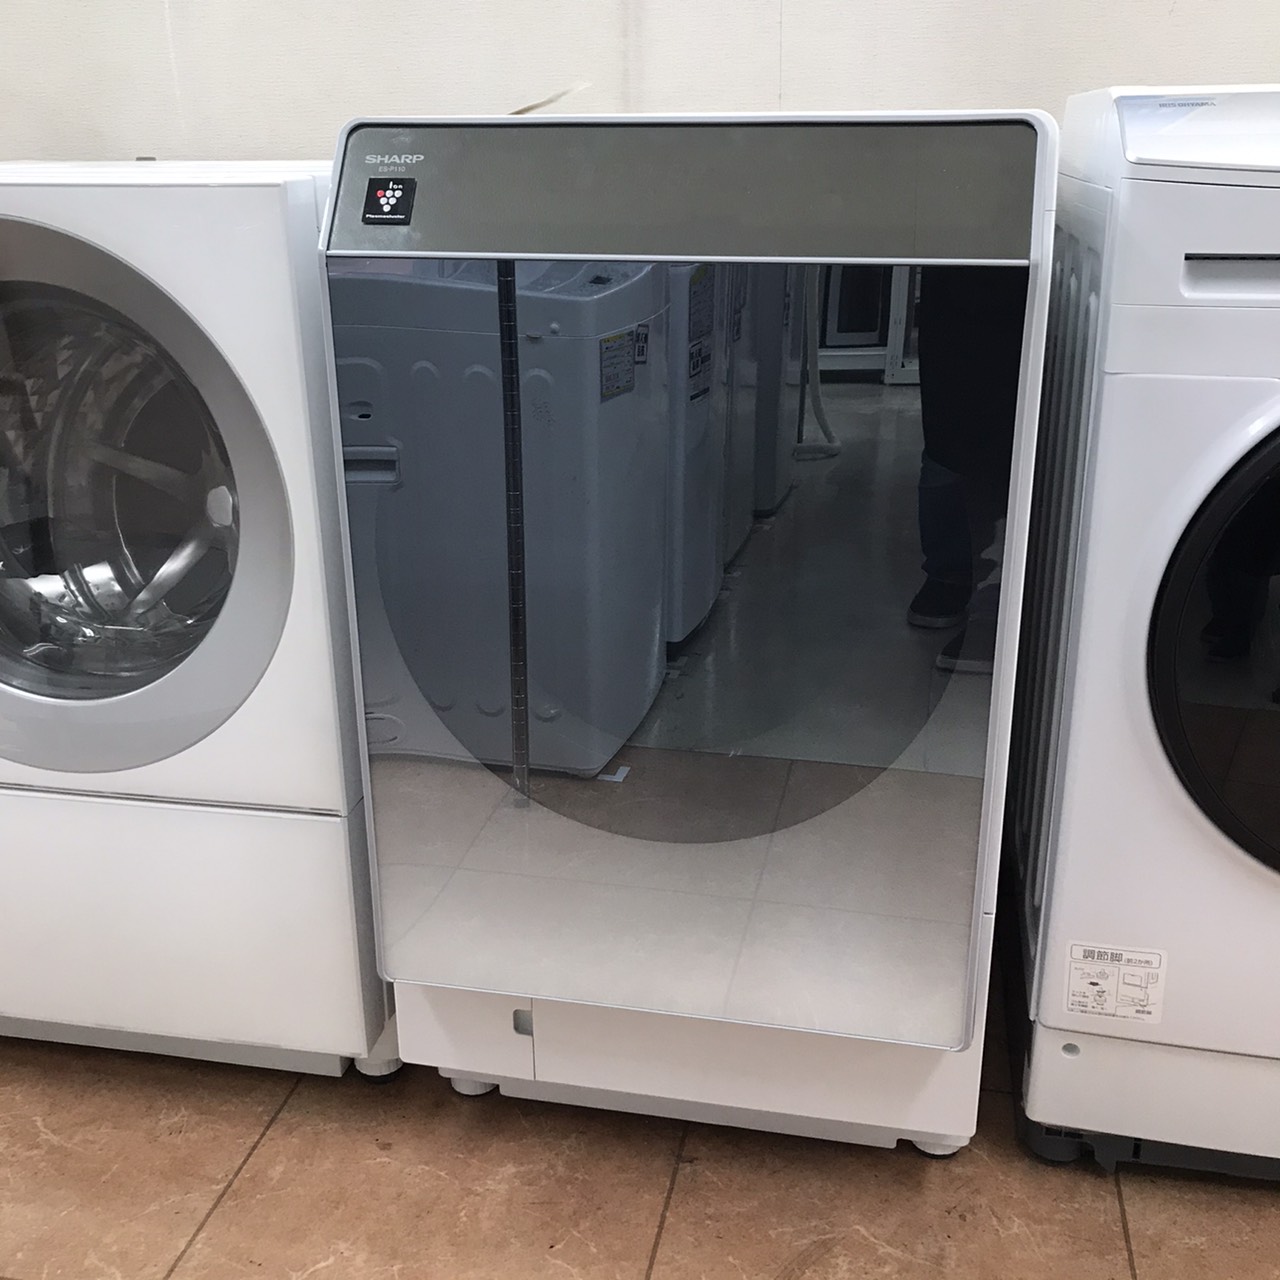 【SHARP 11.0/6.0㎏ドラム式洗濯乾燥機 ES-P110-SL 2018年製 シャープ】お買取り致しました!⭐福岡市 城南区 リサイクルショップ リサイクルマート片江店⭐ - リサイクルマートは現在冷蔵庫の買取、家具の買取強化中です！お気軽にお問い合わせください。